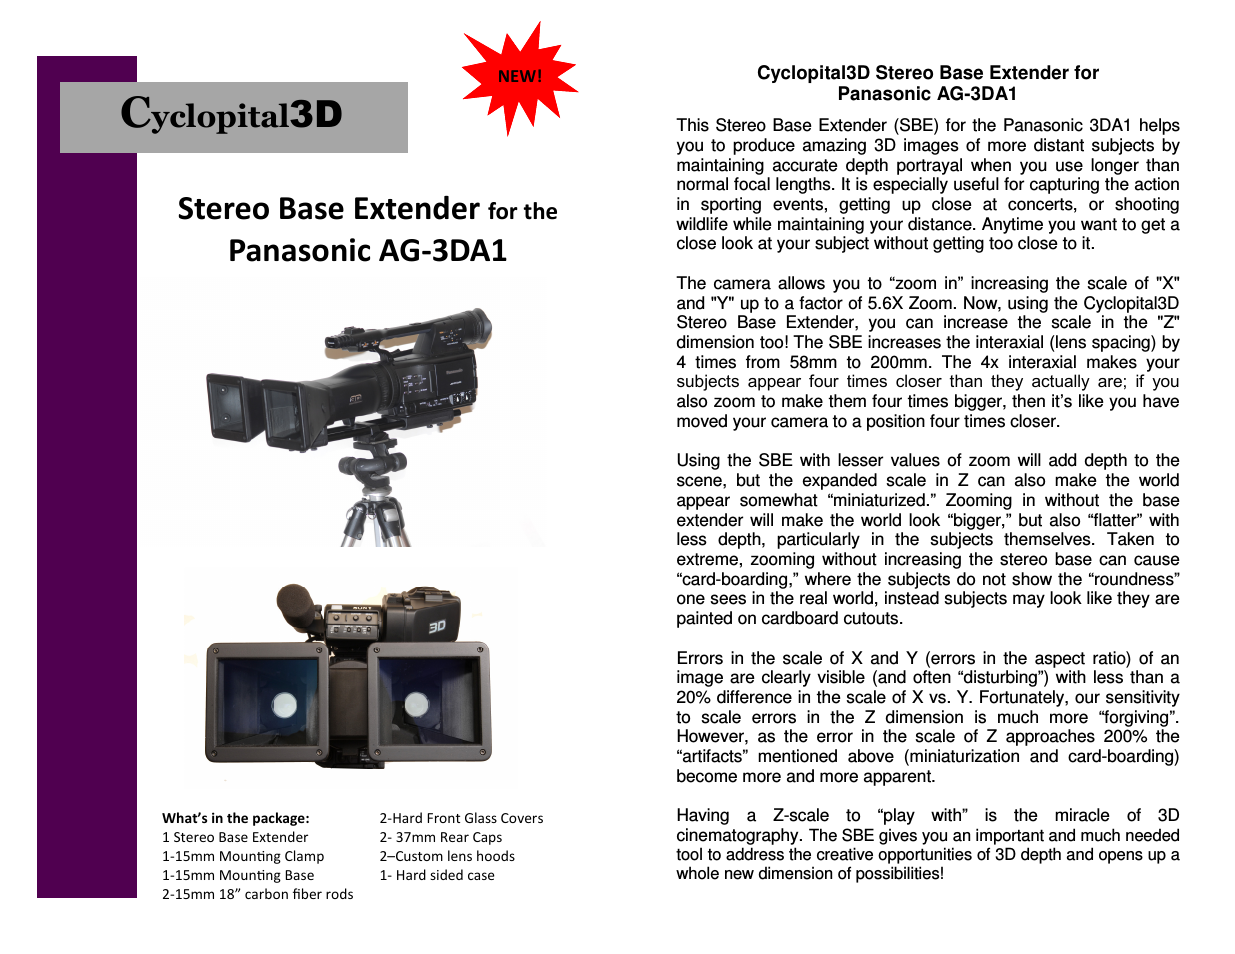 Panasonic 3DA1 Stereo Base Extender